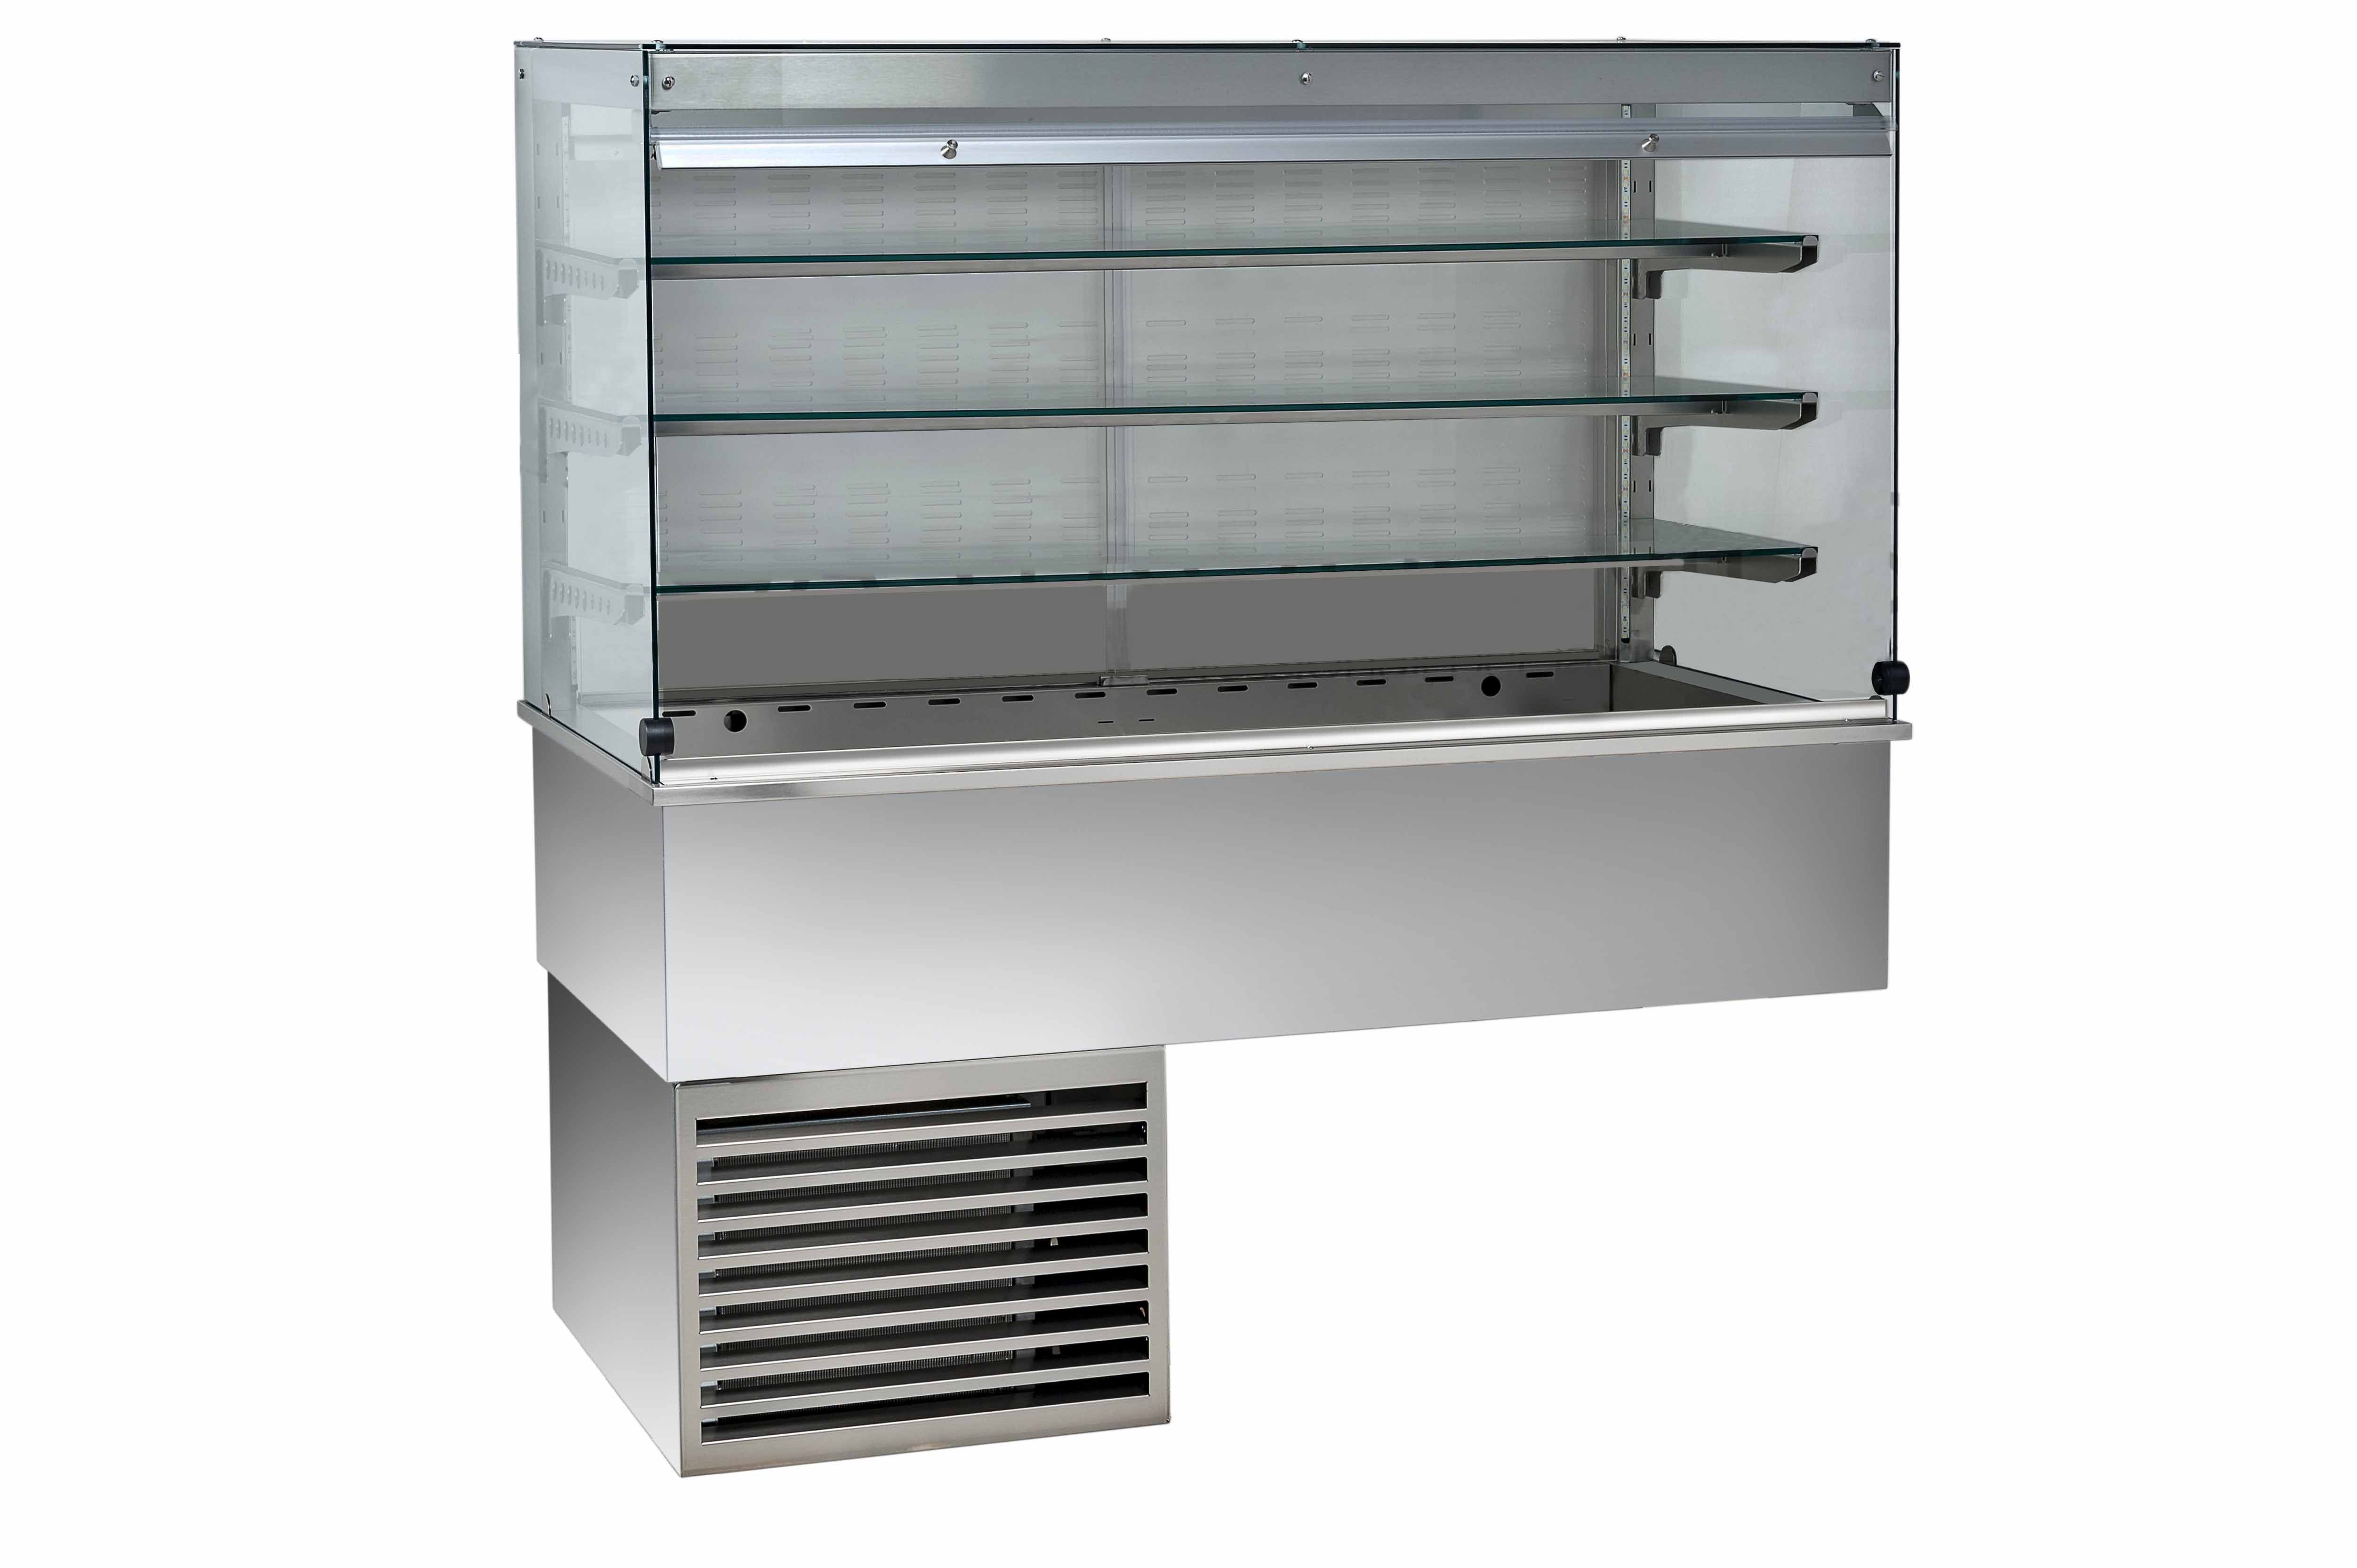 Kühlvitrine – Umluftkühlung – kubisch – 3 Ablagen – Kundenseitevorhang – B 1135 mm